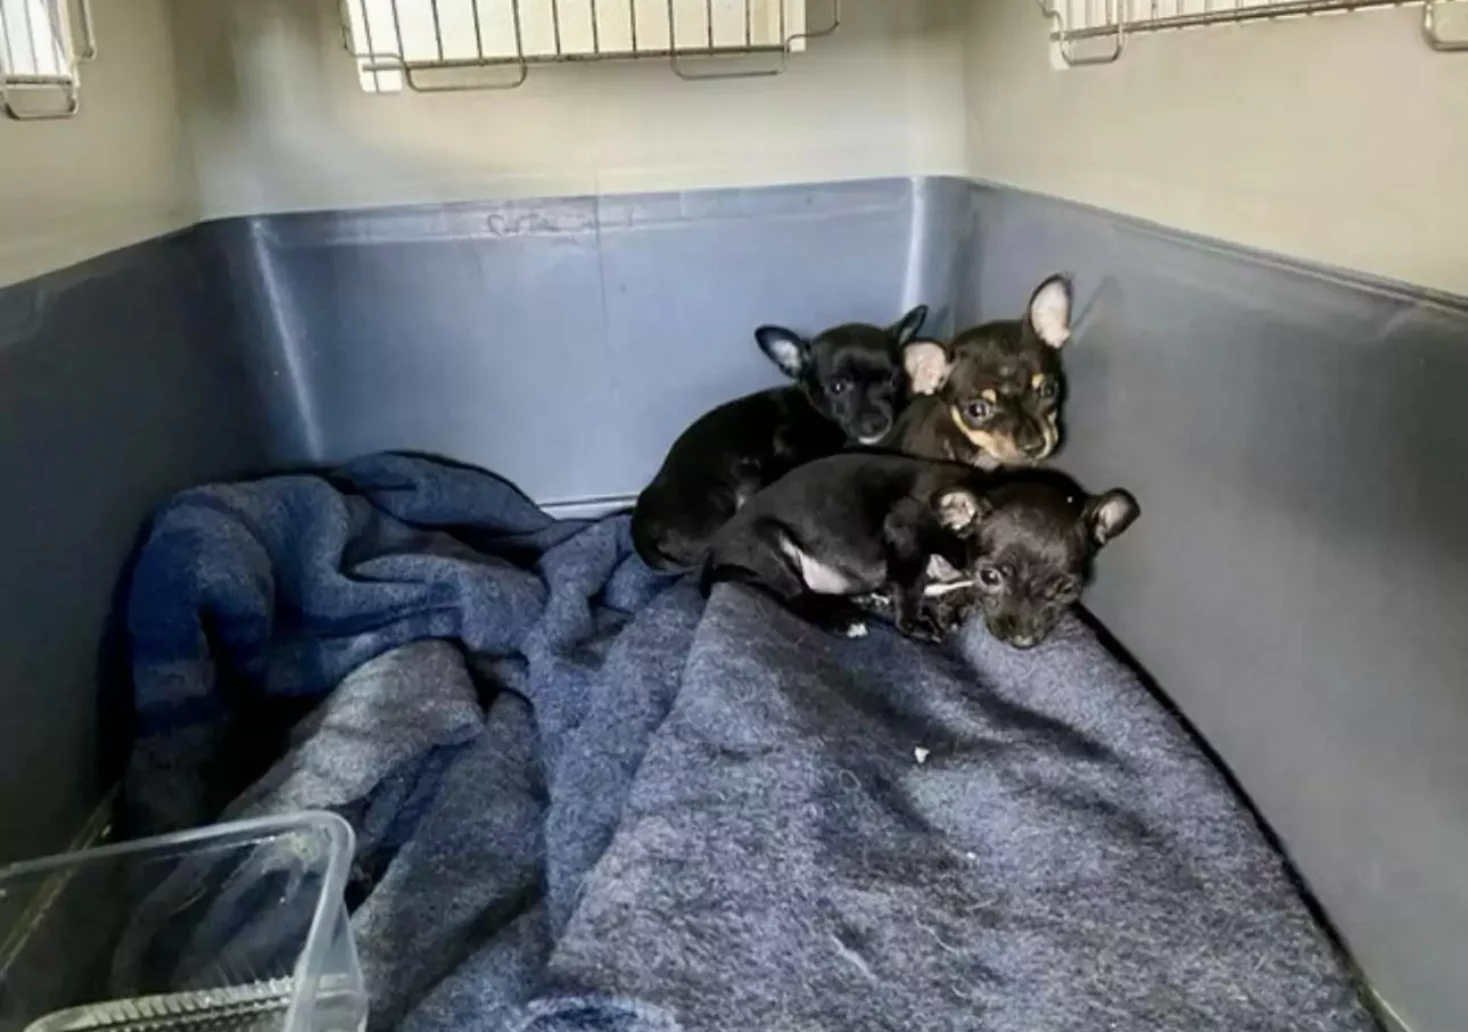 Foto in Beitrag von 5min.at: Zu sehen sind die drei Hundewelpen in ihrem Käfig.